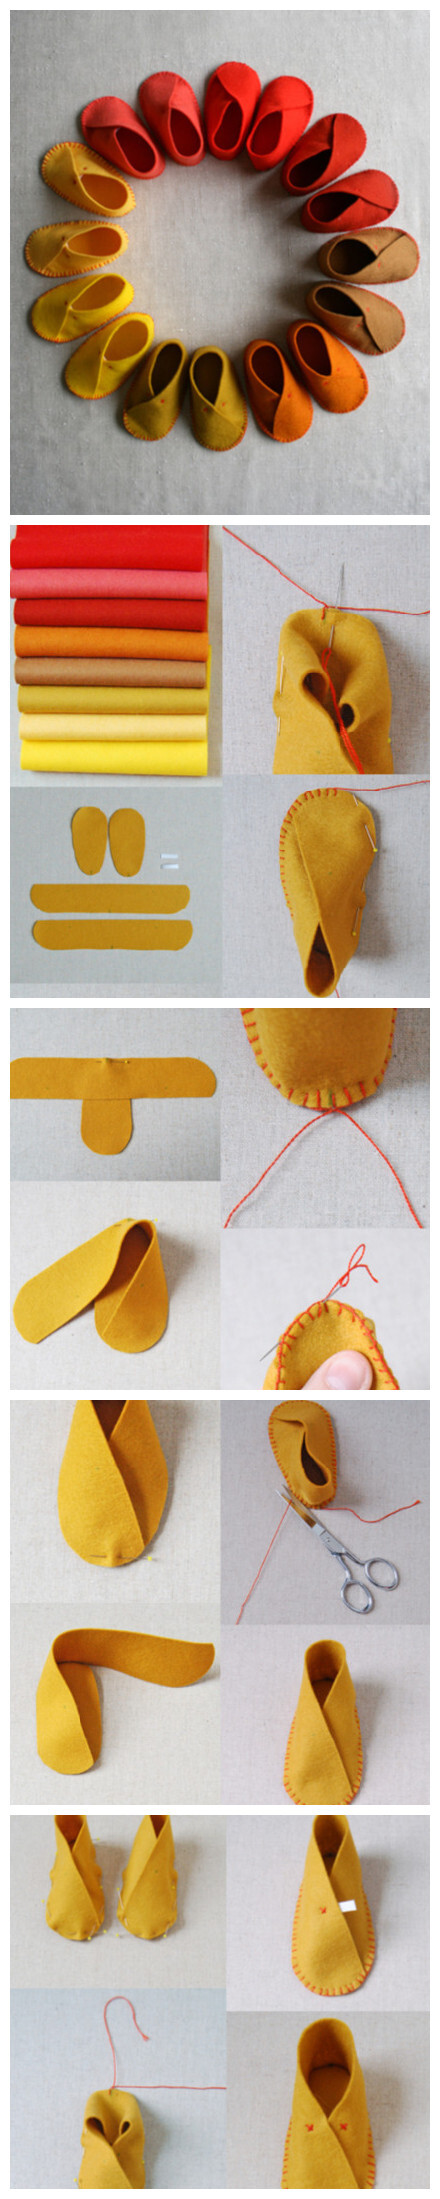 材料：不织布 剪刀 胶水 针线 将不织布剪成如上图所示的一共四个部分 将其中的一个带子这样子折起来，用针线缝合边上 注意这边的缝制针法以及折的方法 其实就是很简单的把鞋底以及鞋面交叉着缝制在一起 比较需要注意的就是缝制方法了
<br />鞋边缝制好之后，用这样子的十字针法在鞋子上面缝上两针就好啦